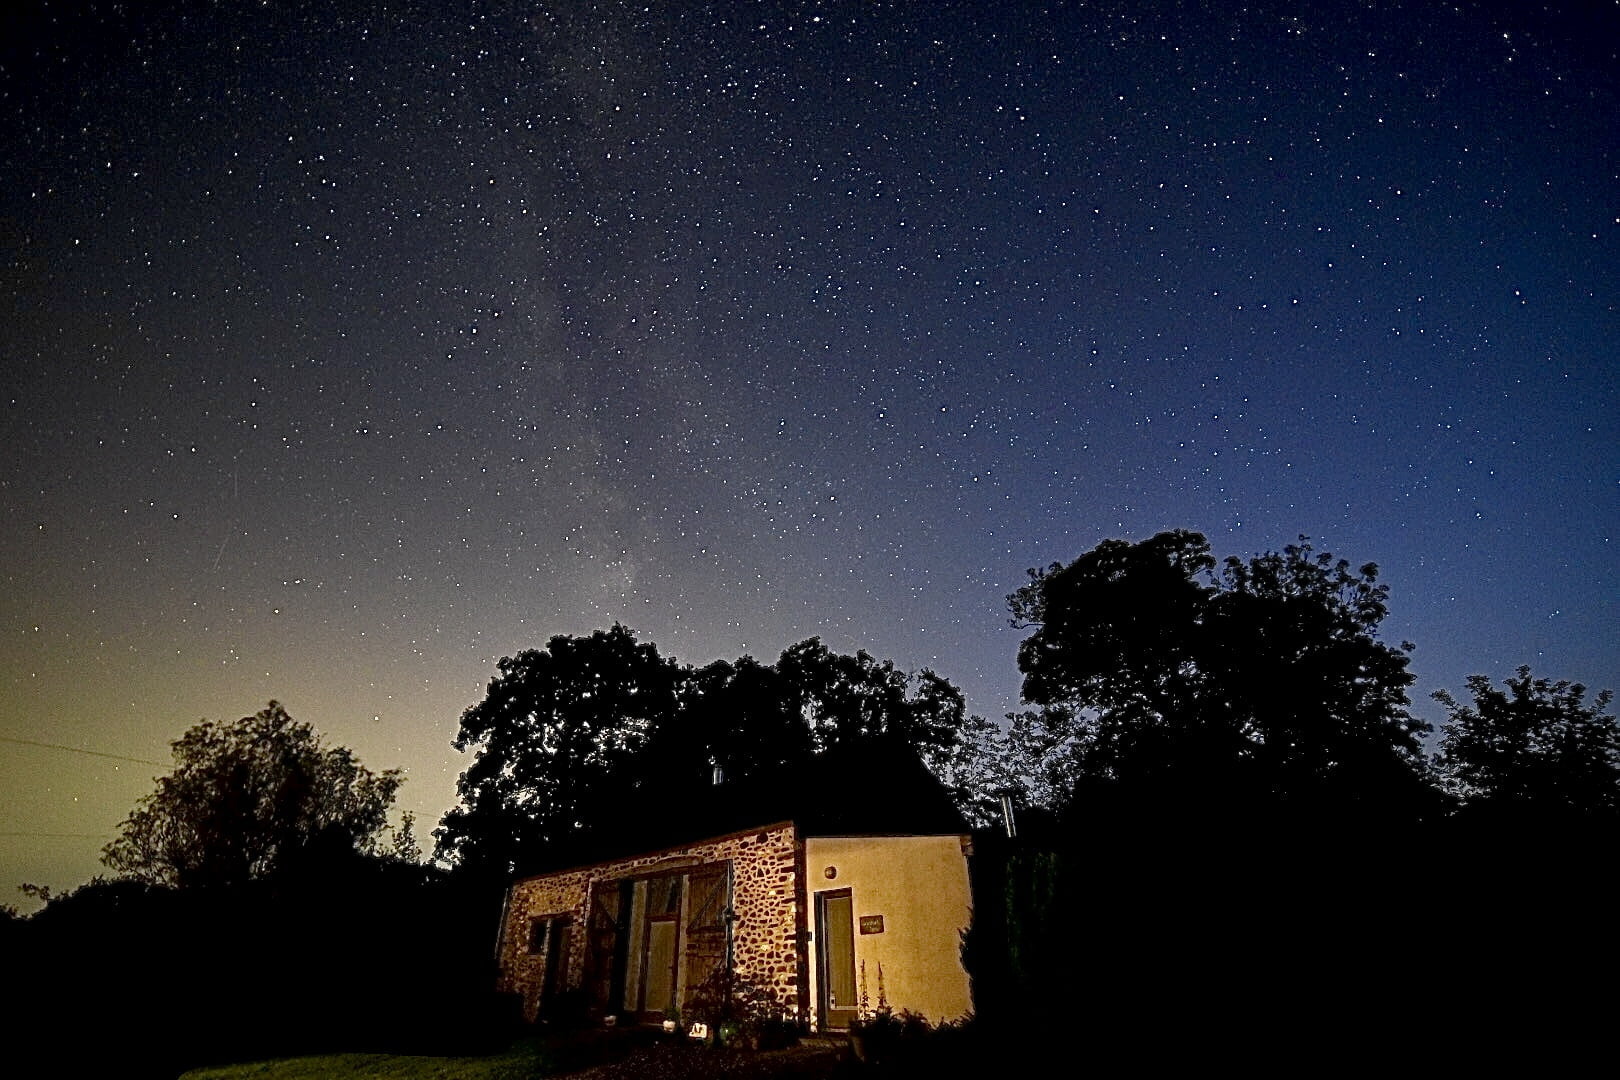 Llwynbwch Barn under the Milky Way